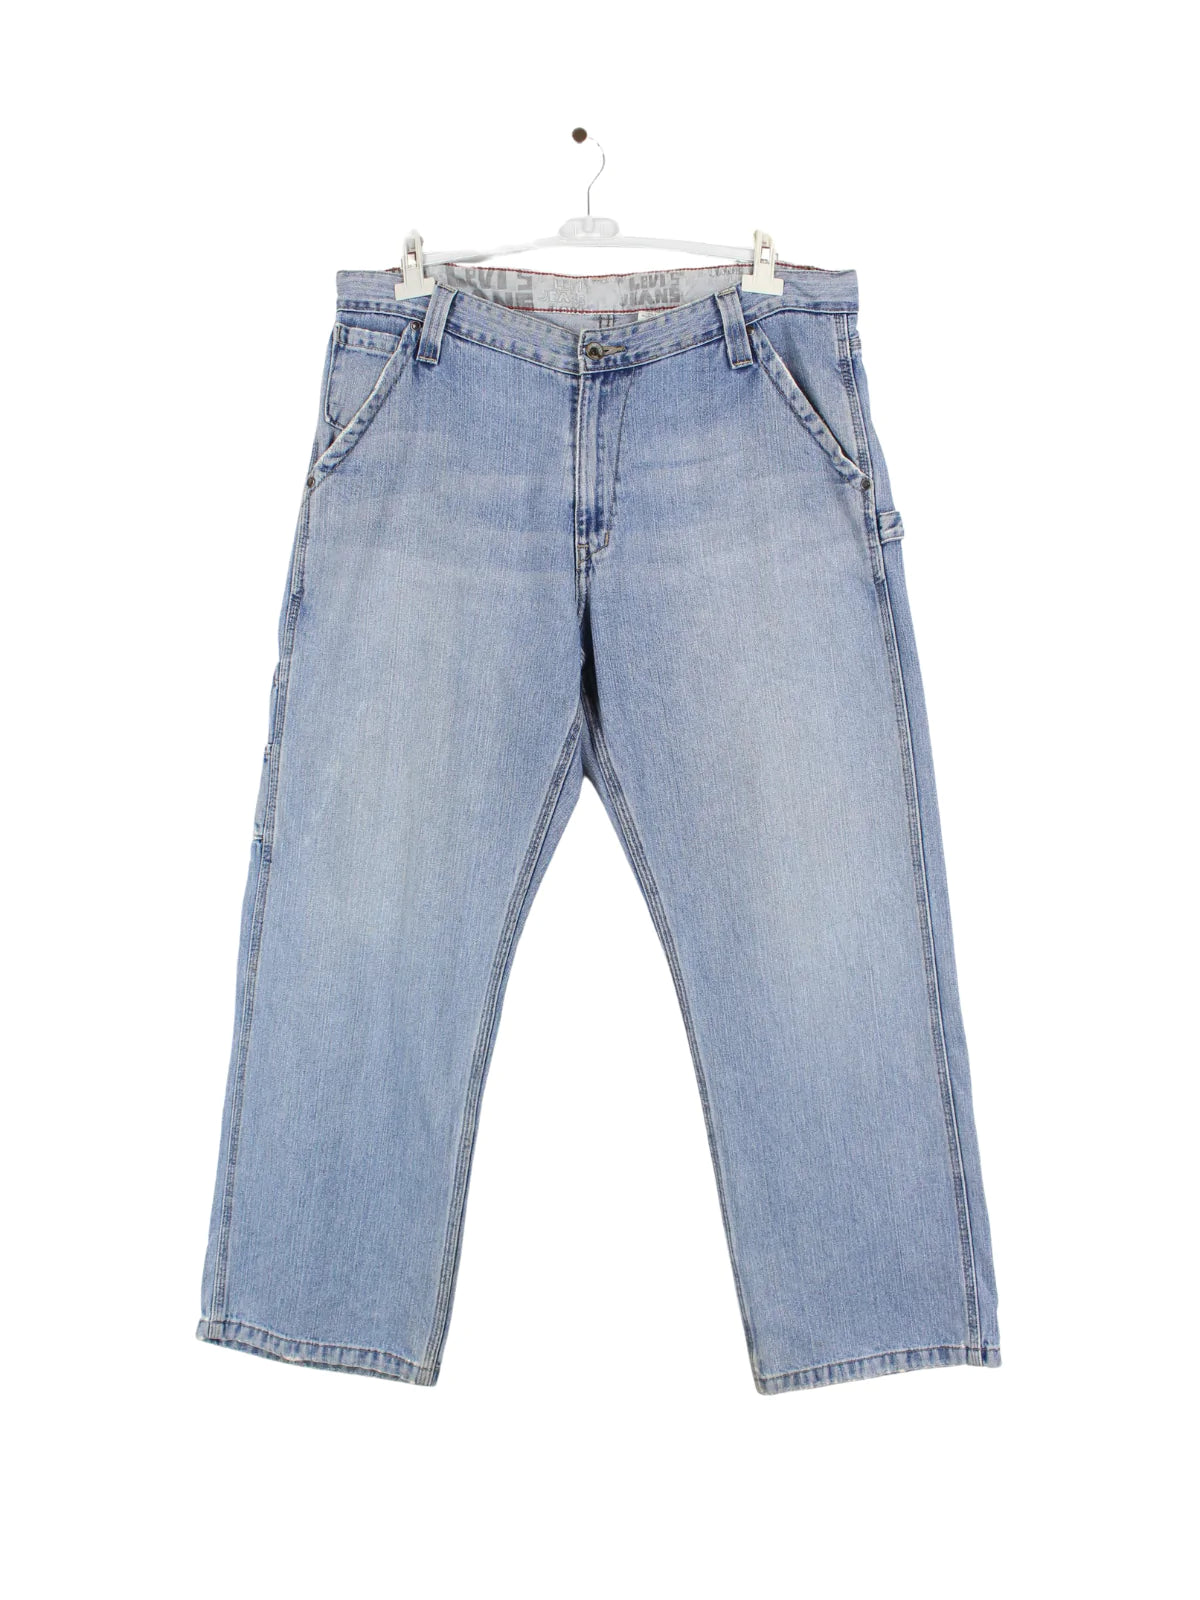 Levi's Carpenter Jeans Blau W36 L29